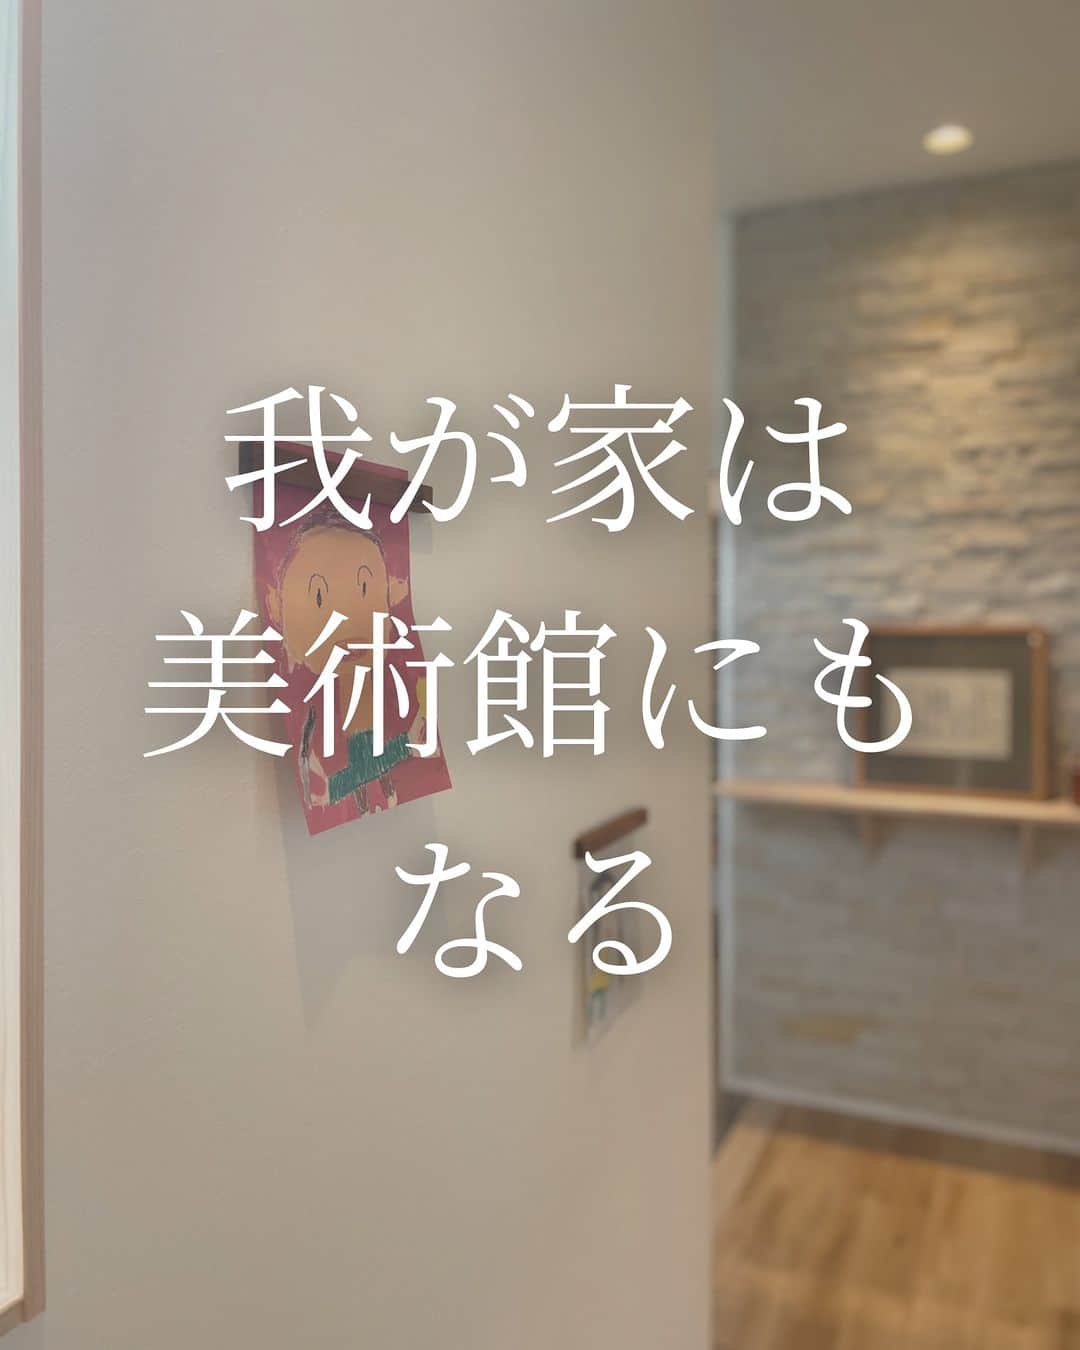 （有）岡崎工務店のインスタグラム：「. 富山県滑川市の工務店です😊 自然素材を使って社員大工が建てる家💪 ************* 我が家は美術館にもなる✨  玄関ホールの壁の一部に Feボードを施工した こちらのおうち🏠  お子さんの絵や 家族写真をマグネットで付ければ たちまちお家美術館に😊  家族の思い出が どんどん増えていくのが うれしいですよね🥰  気になることがあれば お気軽にコメントくださいね🍄  *************  HPではたくさんのお家の施工例をご紹介しています♩ 是非、覗いてみてください🌟 HPへはトップページ(@okazakikoumuten)からどうぞ😊  資料のご請求、または来場予約もHPから受付中です♬  ——————————————————— 電話 076-475-9749 ——————————————————— 資料請求はこちらから→@okazakikoumutenotoiawase  ——————————————————— #玄関 #玄関ホール #Feボード #Feボード施工例 #磁石の付く壁 #磁石 #マグネット #おうち美術館 #子供の絵 #家族写真のある暮らし #子供の作品 #社員大工 #自社大工 #子供のいる暮らし #マイホーム #素敵な家 #お洒落な家 #おしゃれな家 #こだわりの家 #居心地のいい家 #家づくり #家づくり記録 #自然素材の家 #注文住宅 #自由設計 #自由設計の家 #富山工務店 #岡崎工務店 #滑川 #富山」